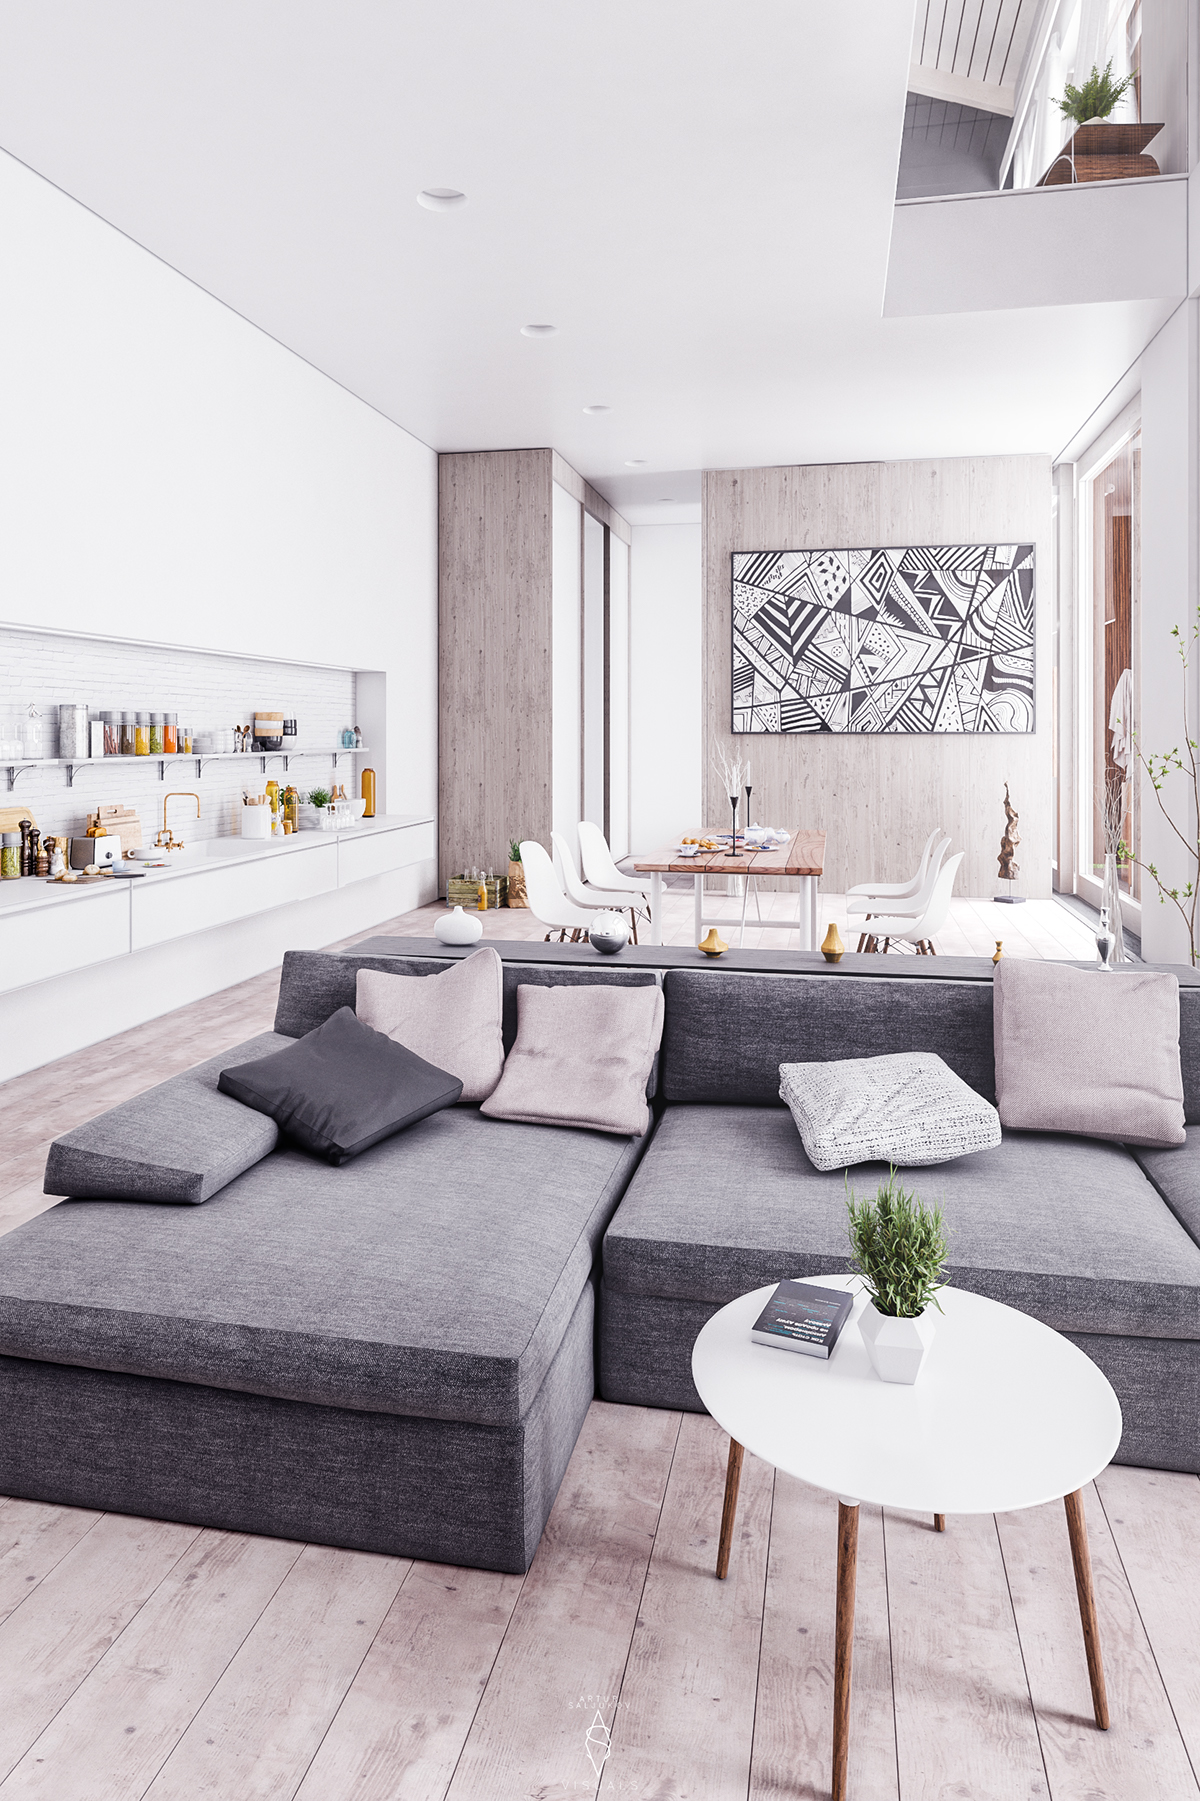 3dsmax vray Render model Interior livingroom house